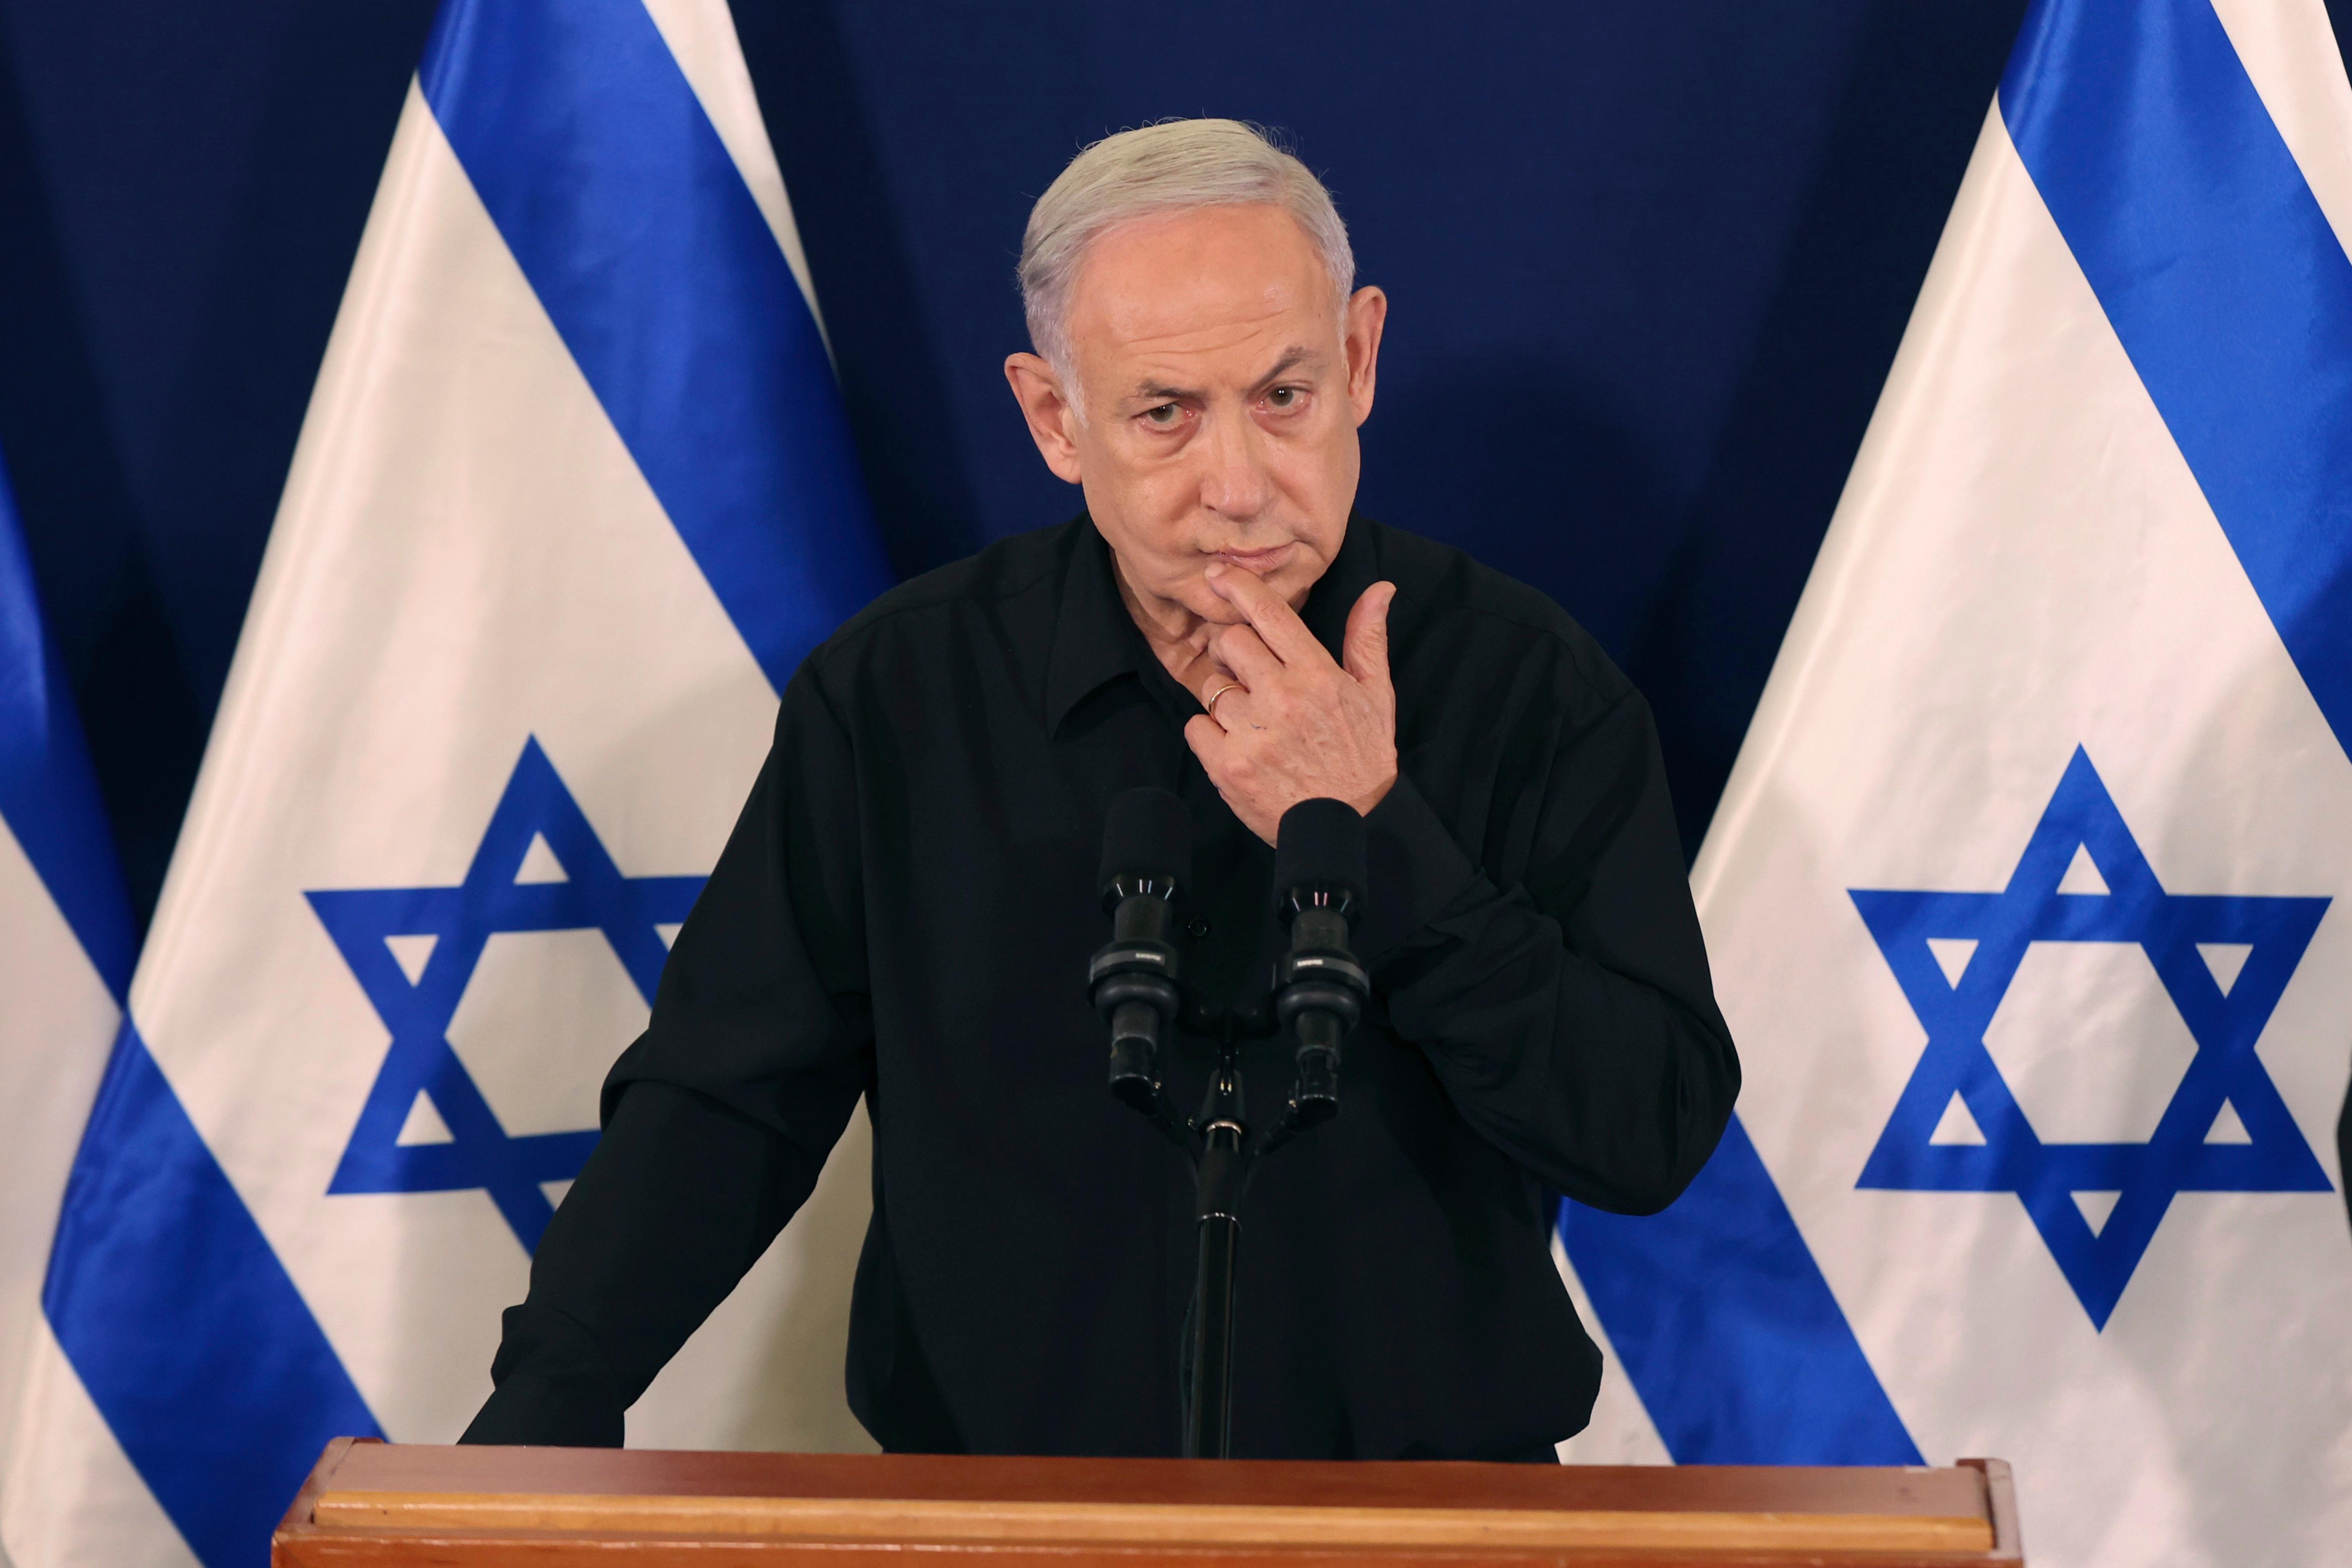 Reféns complicam plano de vingança de Netanyahu contra o Hamas